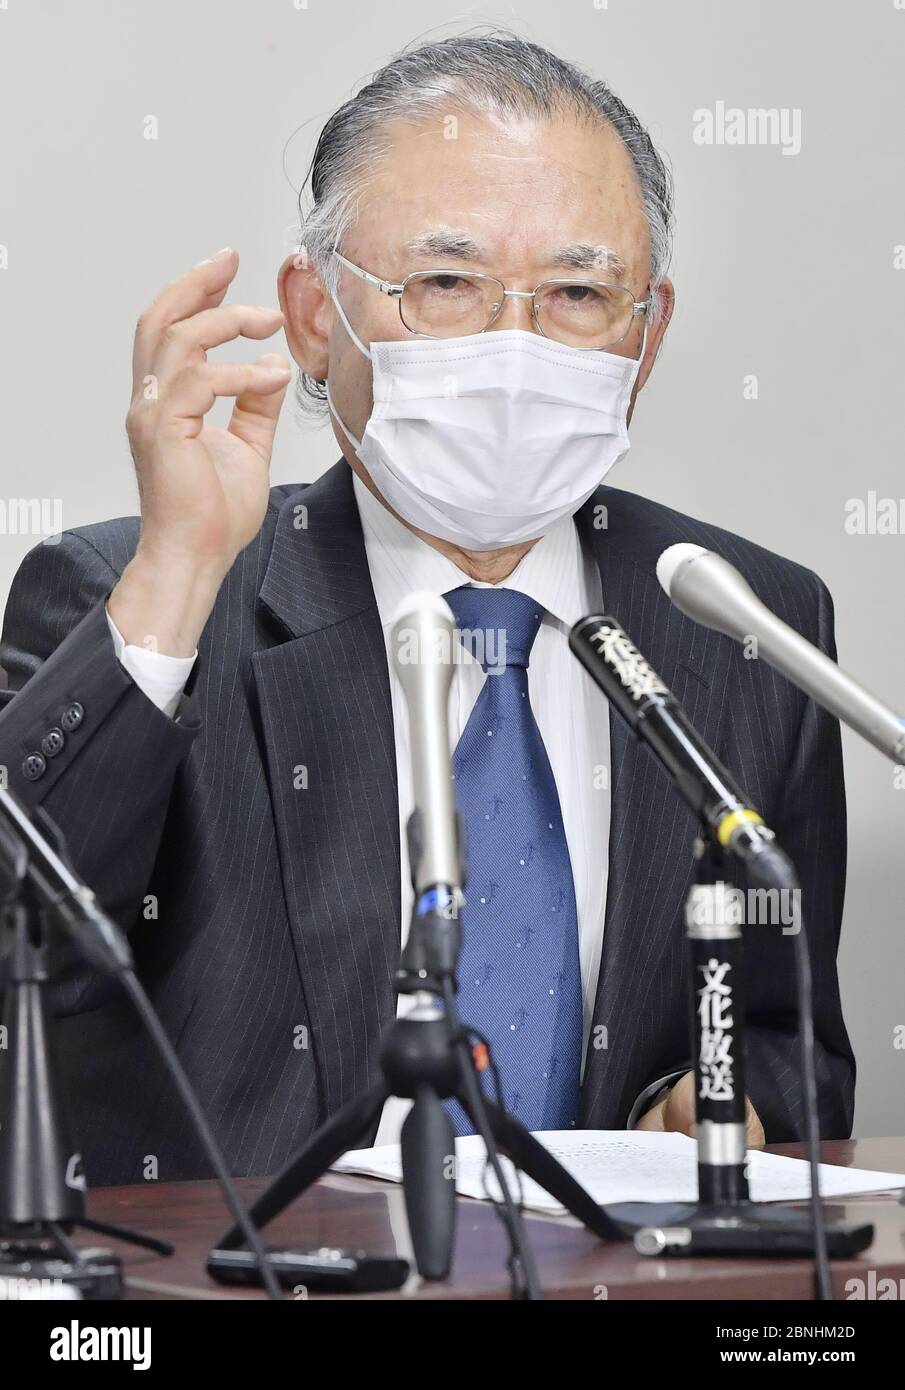 El ex Fiscal General Kunihiro Matsuo habla en una conferencia de prensa en Tokio el 15 de mayo de 2020. Un grupo de ex fiscales de alto nivel presentó una carta al Ministerio de Justicia el mismo día para oponerse a un proyecto de ley que elevaría la edad de jubilación de los fiscales y los haría "actuar en interés de la administración". (Foto de la piscina) (Kyodo)==Kyodo Photo via Newscom Foto de stock